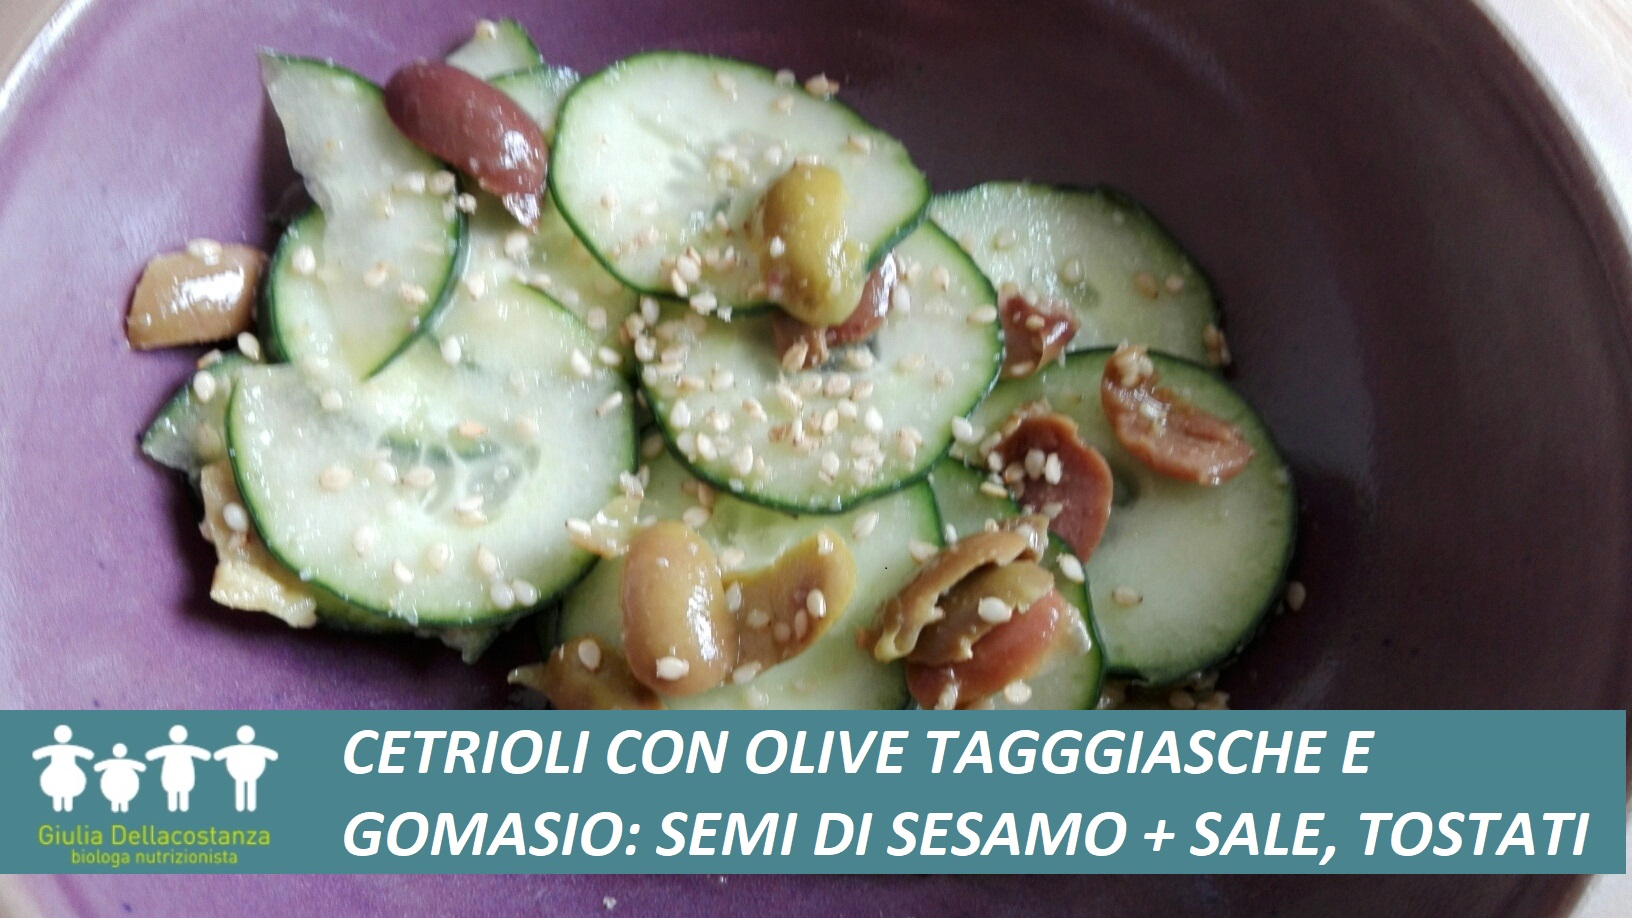 Insalata di cetrioli conditi con semi di sesamo tostati e olive taggiasche.